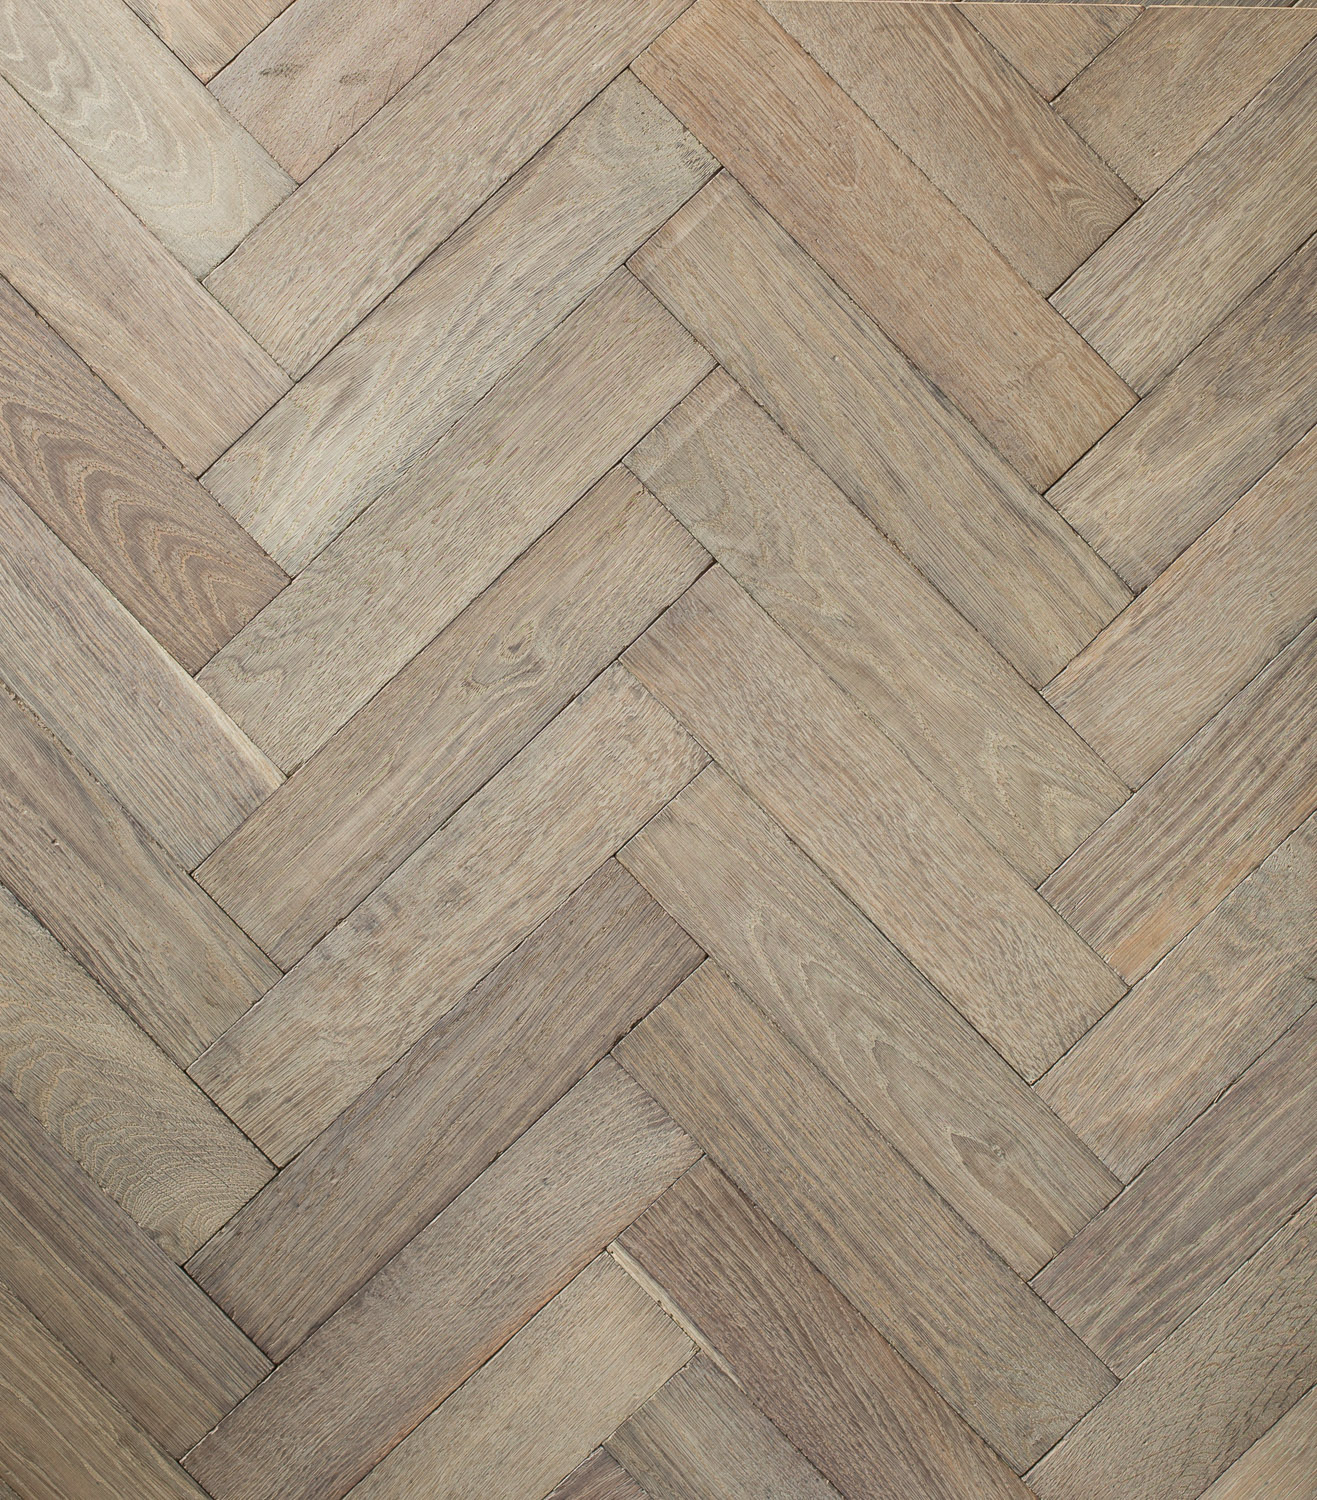 Regency Grey Herringbone Panels & Parquet Flooring, Solid Wood Flooring